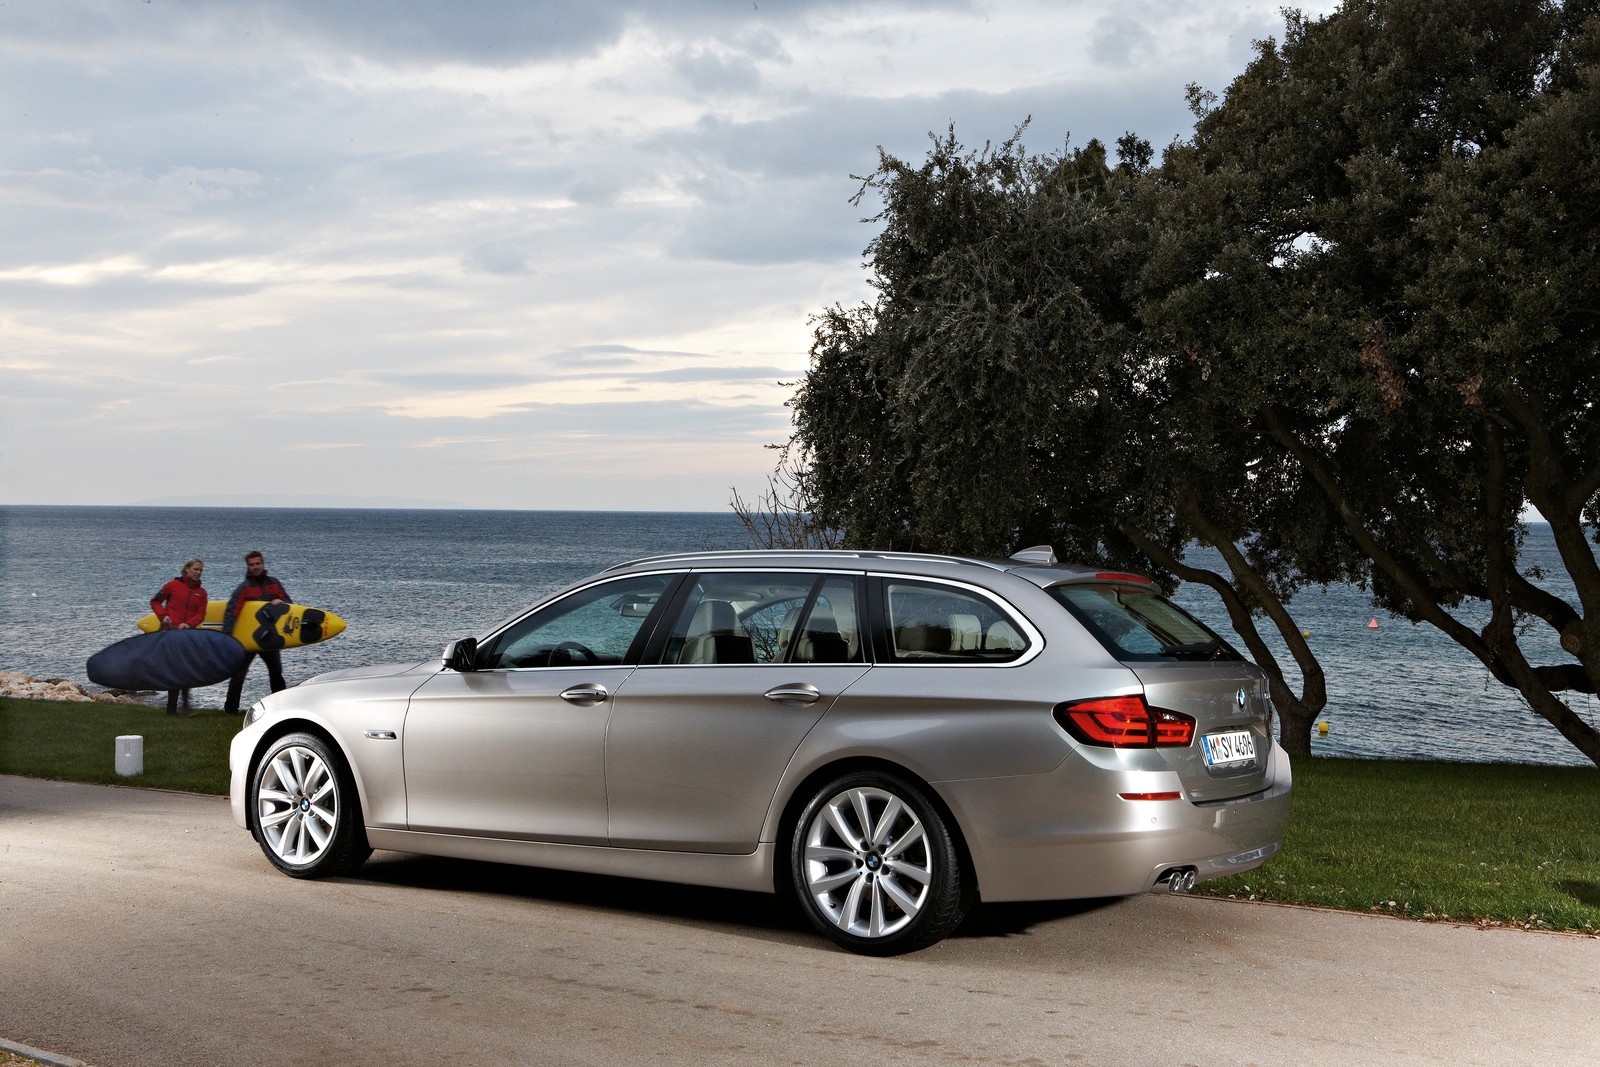 daar ben ik het mee eens insect backup 2011 BMW 5-Series Touring: Still Not Coming to America